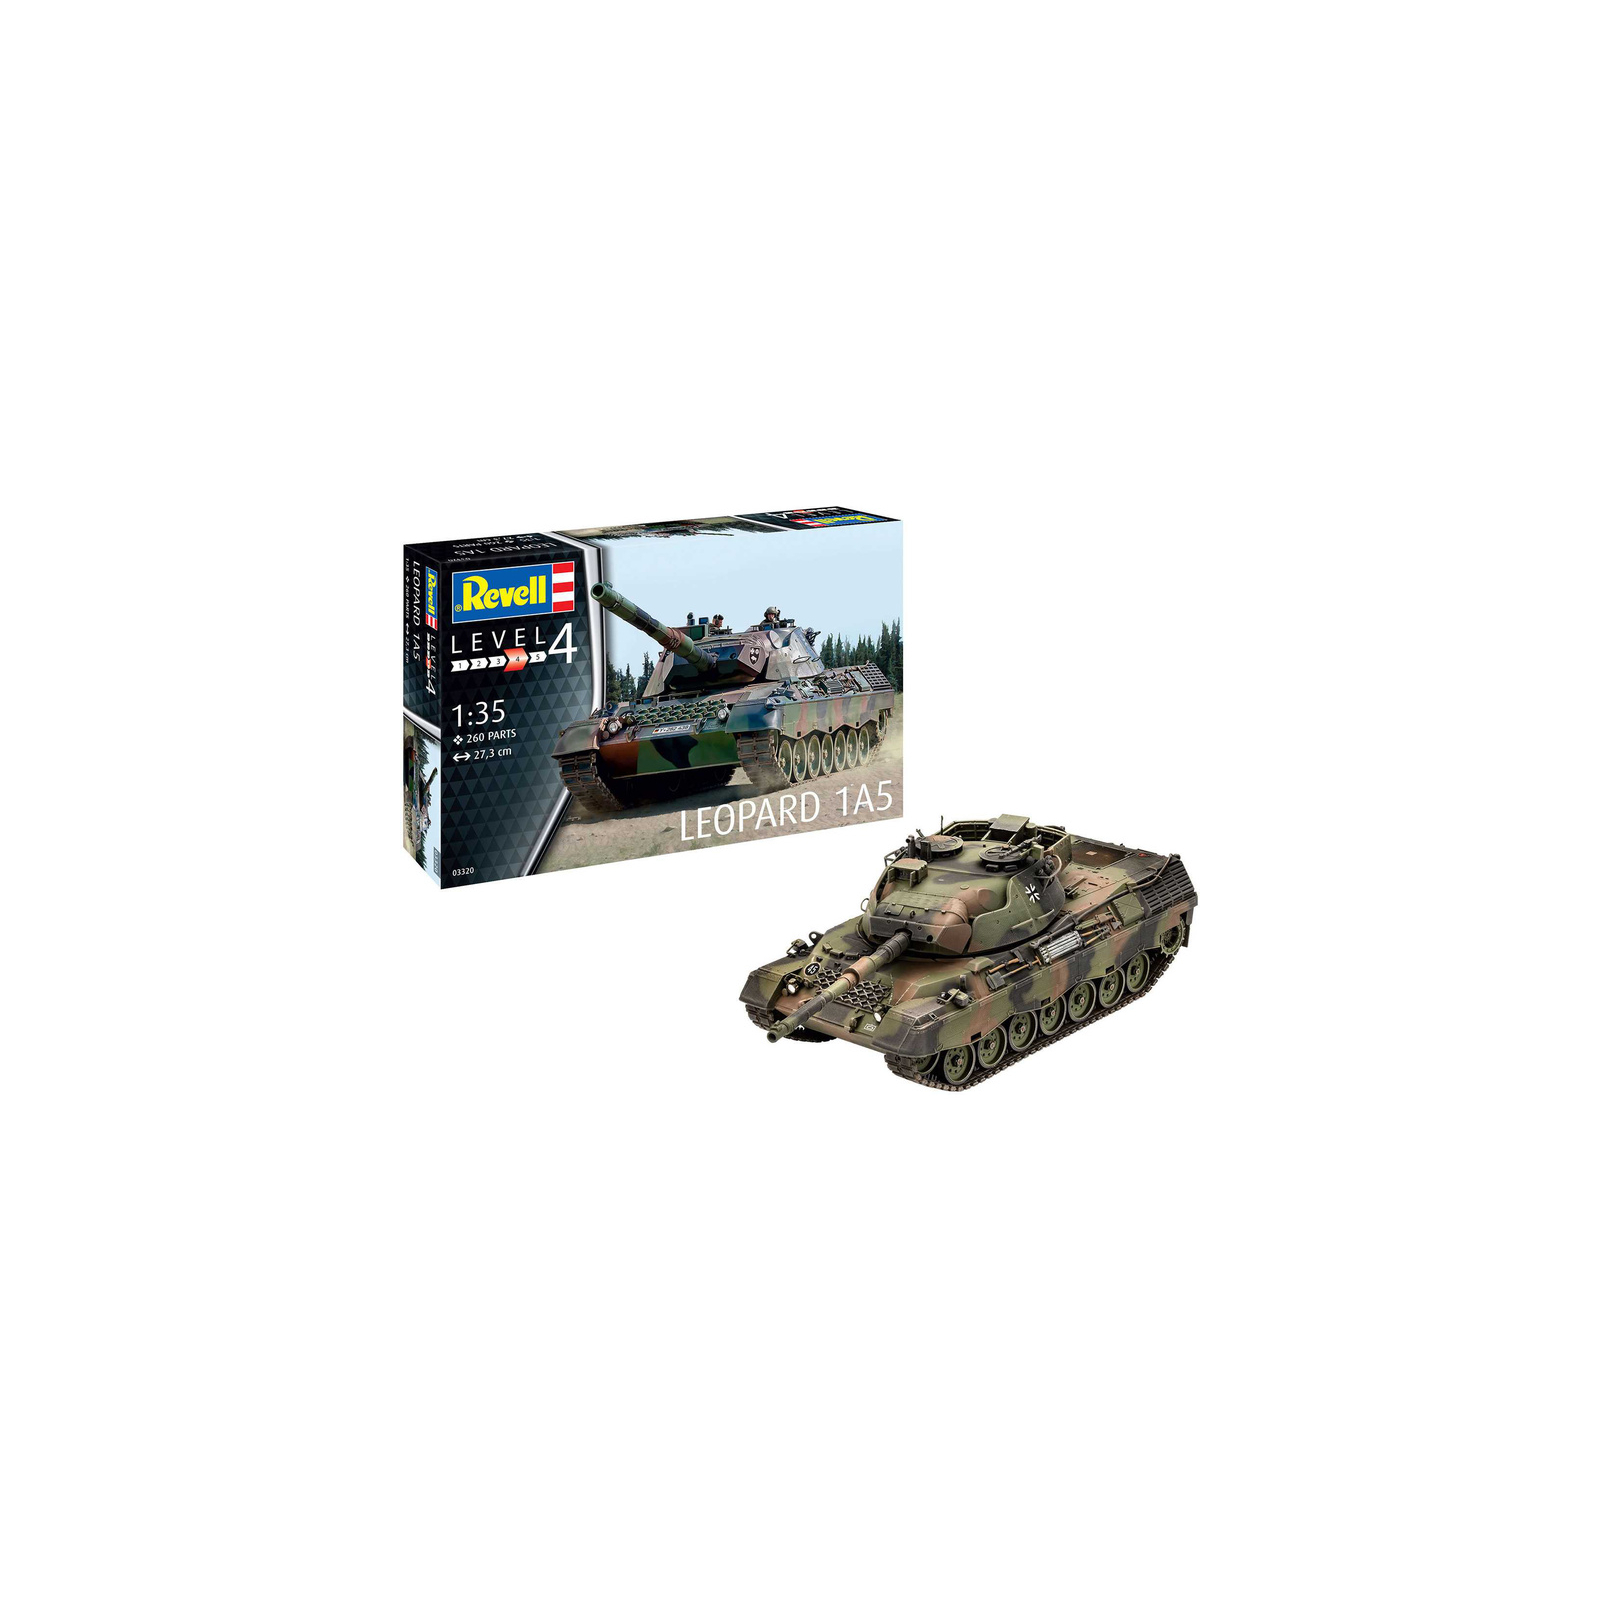 Сборная модель Revell Танк Leopard 1A5 уровень 4, 1:35 (RVL-03320) изображение 2